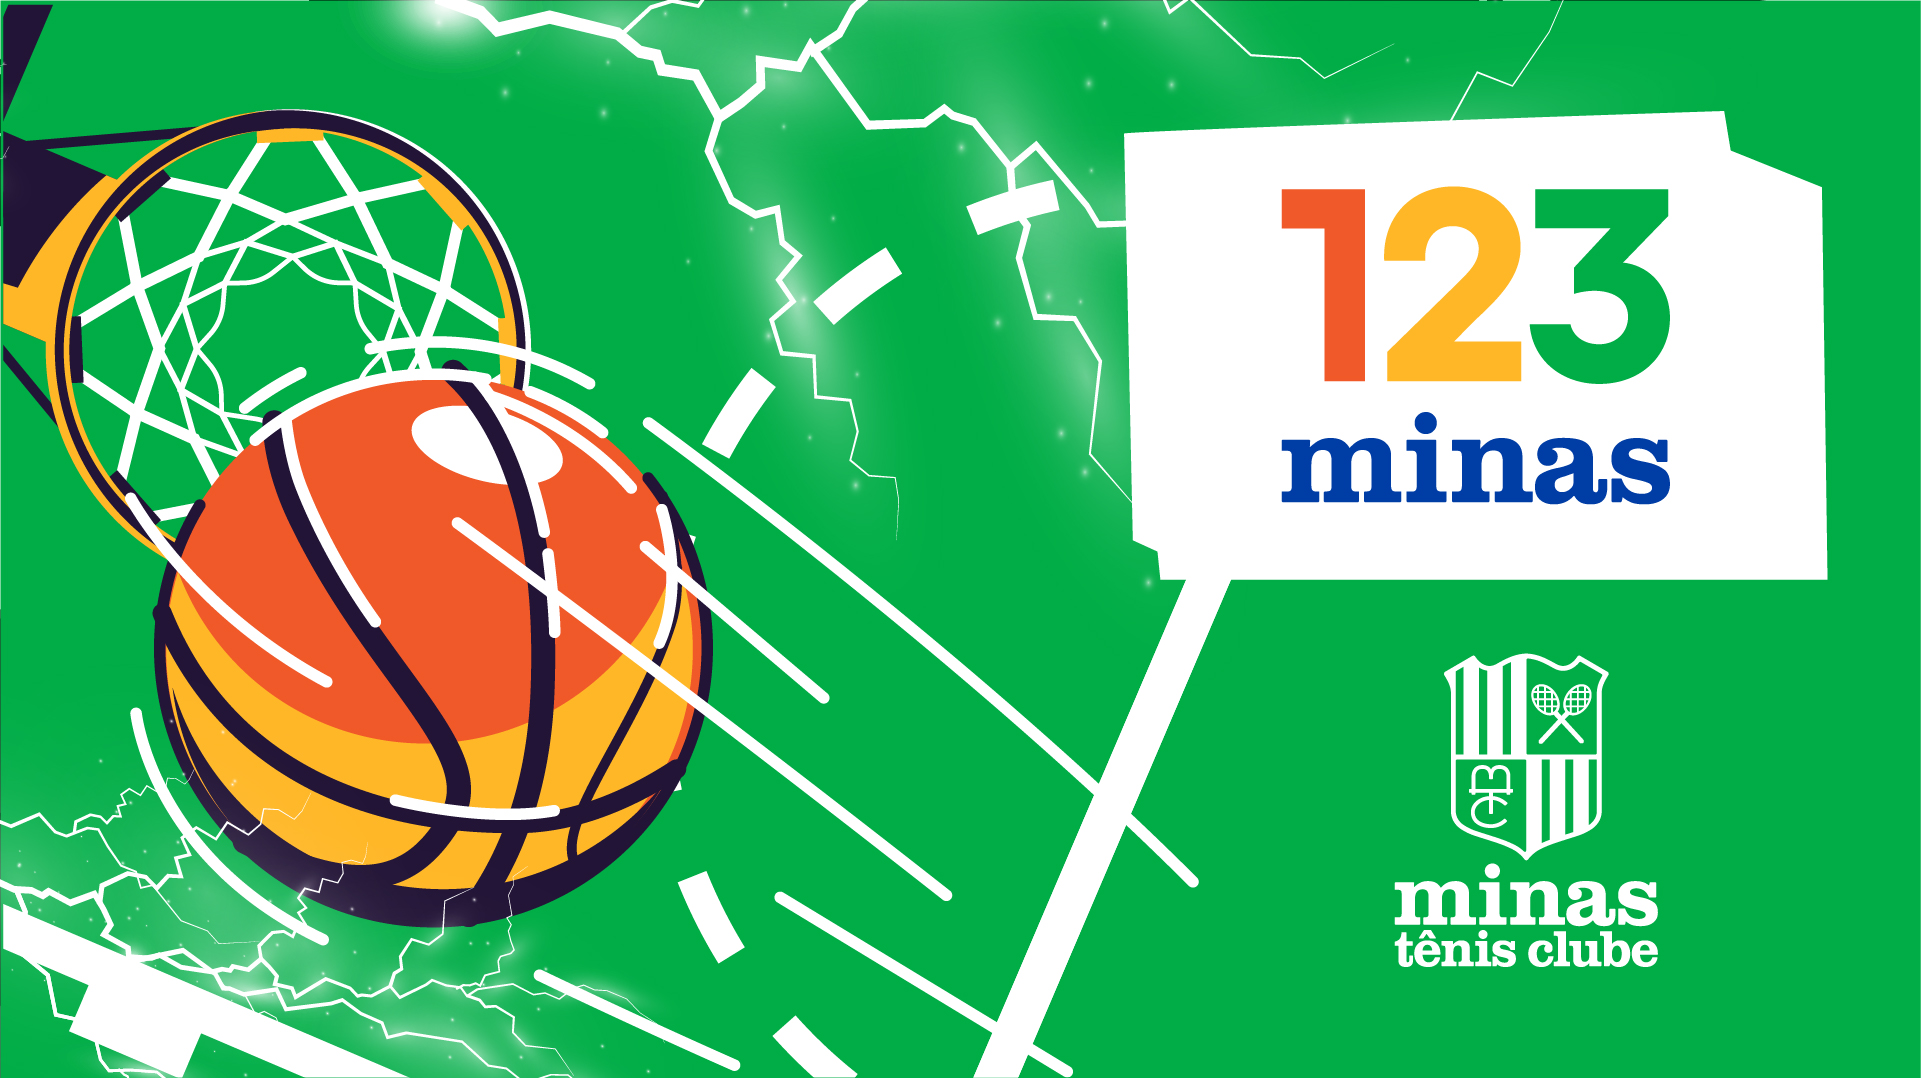 123milhas é a nova patrocinadora Master do basquete do Minas Tênis Clube